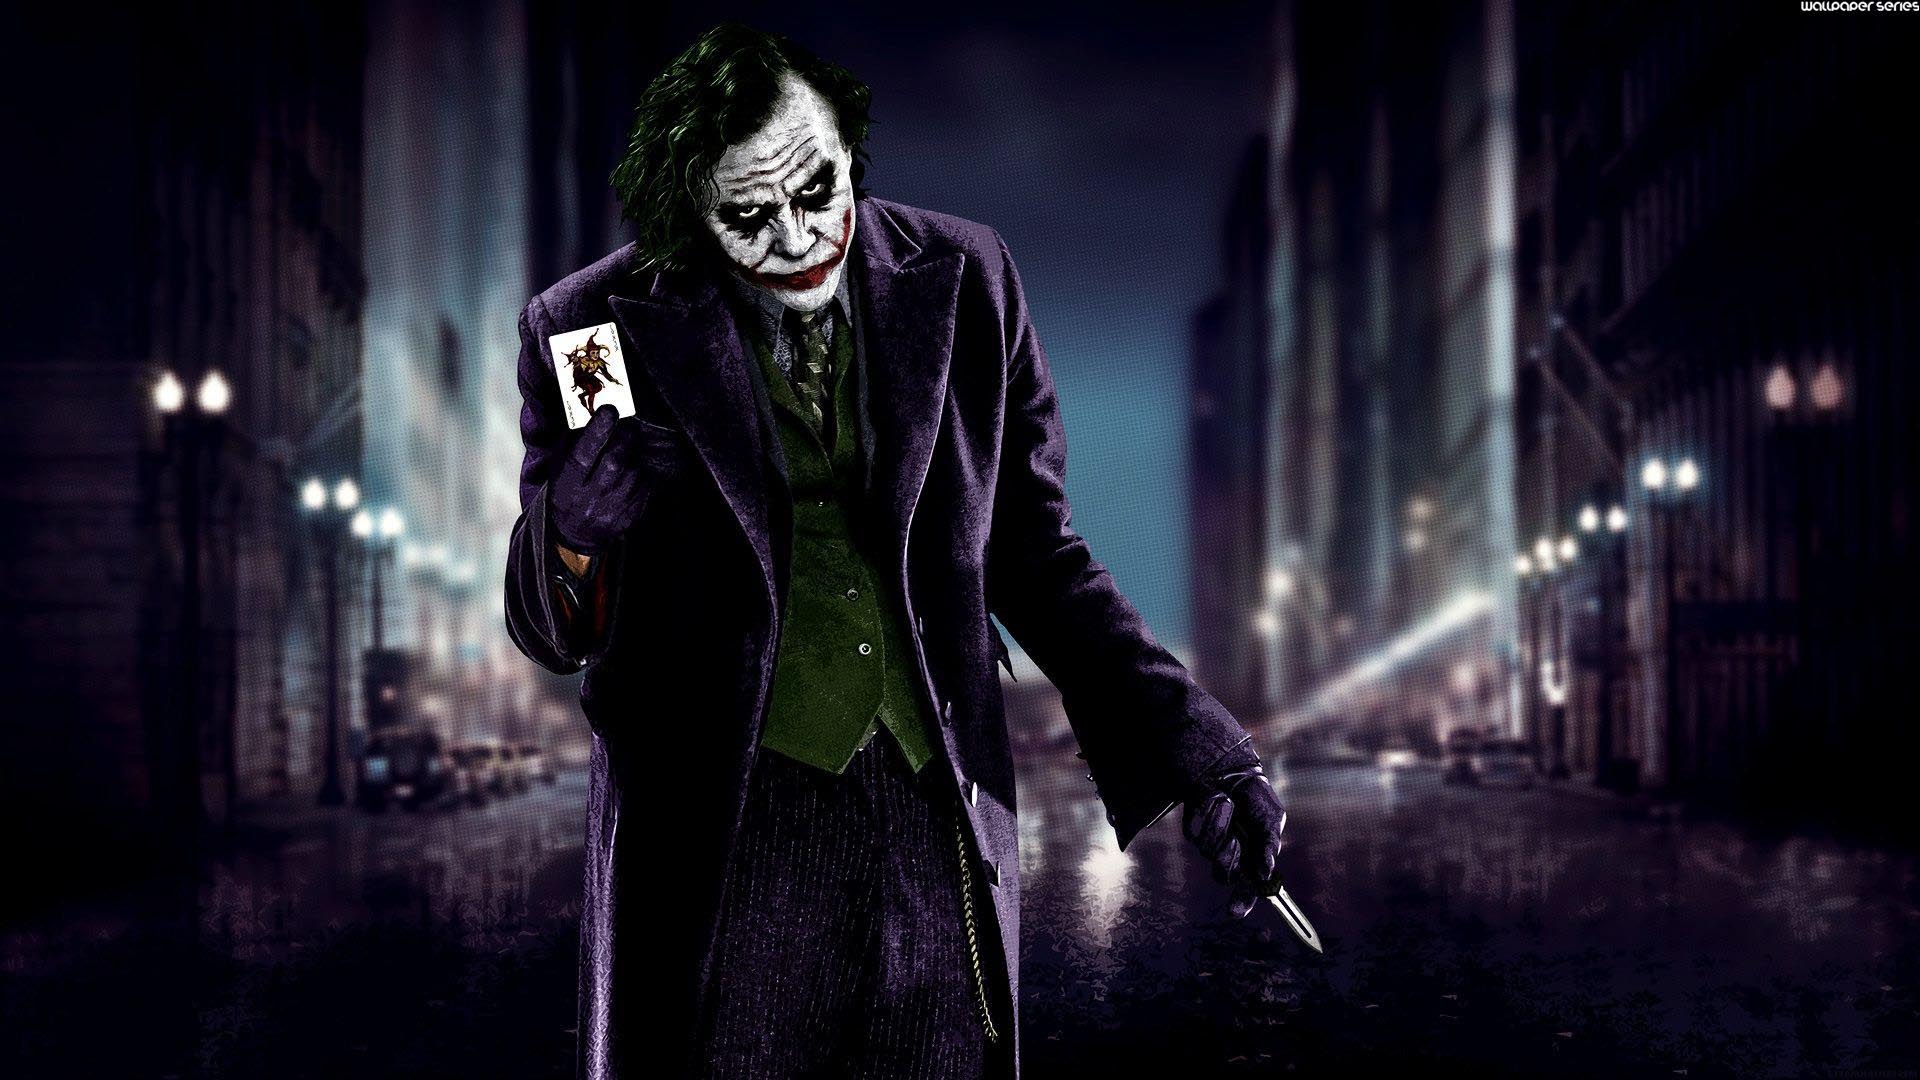 Batman, The Dark Knight, The Dark Knight Rises, Joker, - 4k Wallpaper Joker 2019 - HD Wallpaper 